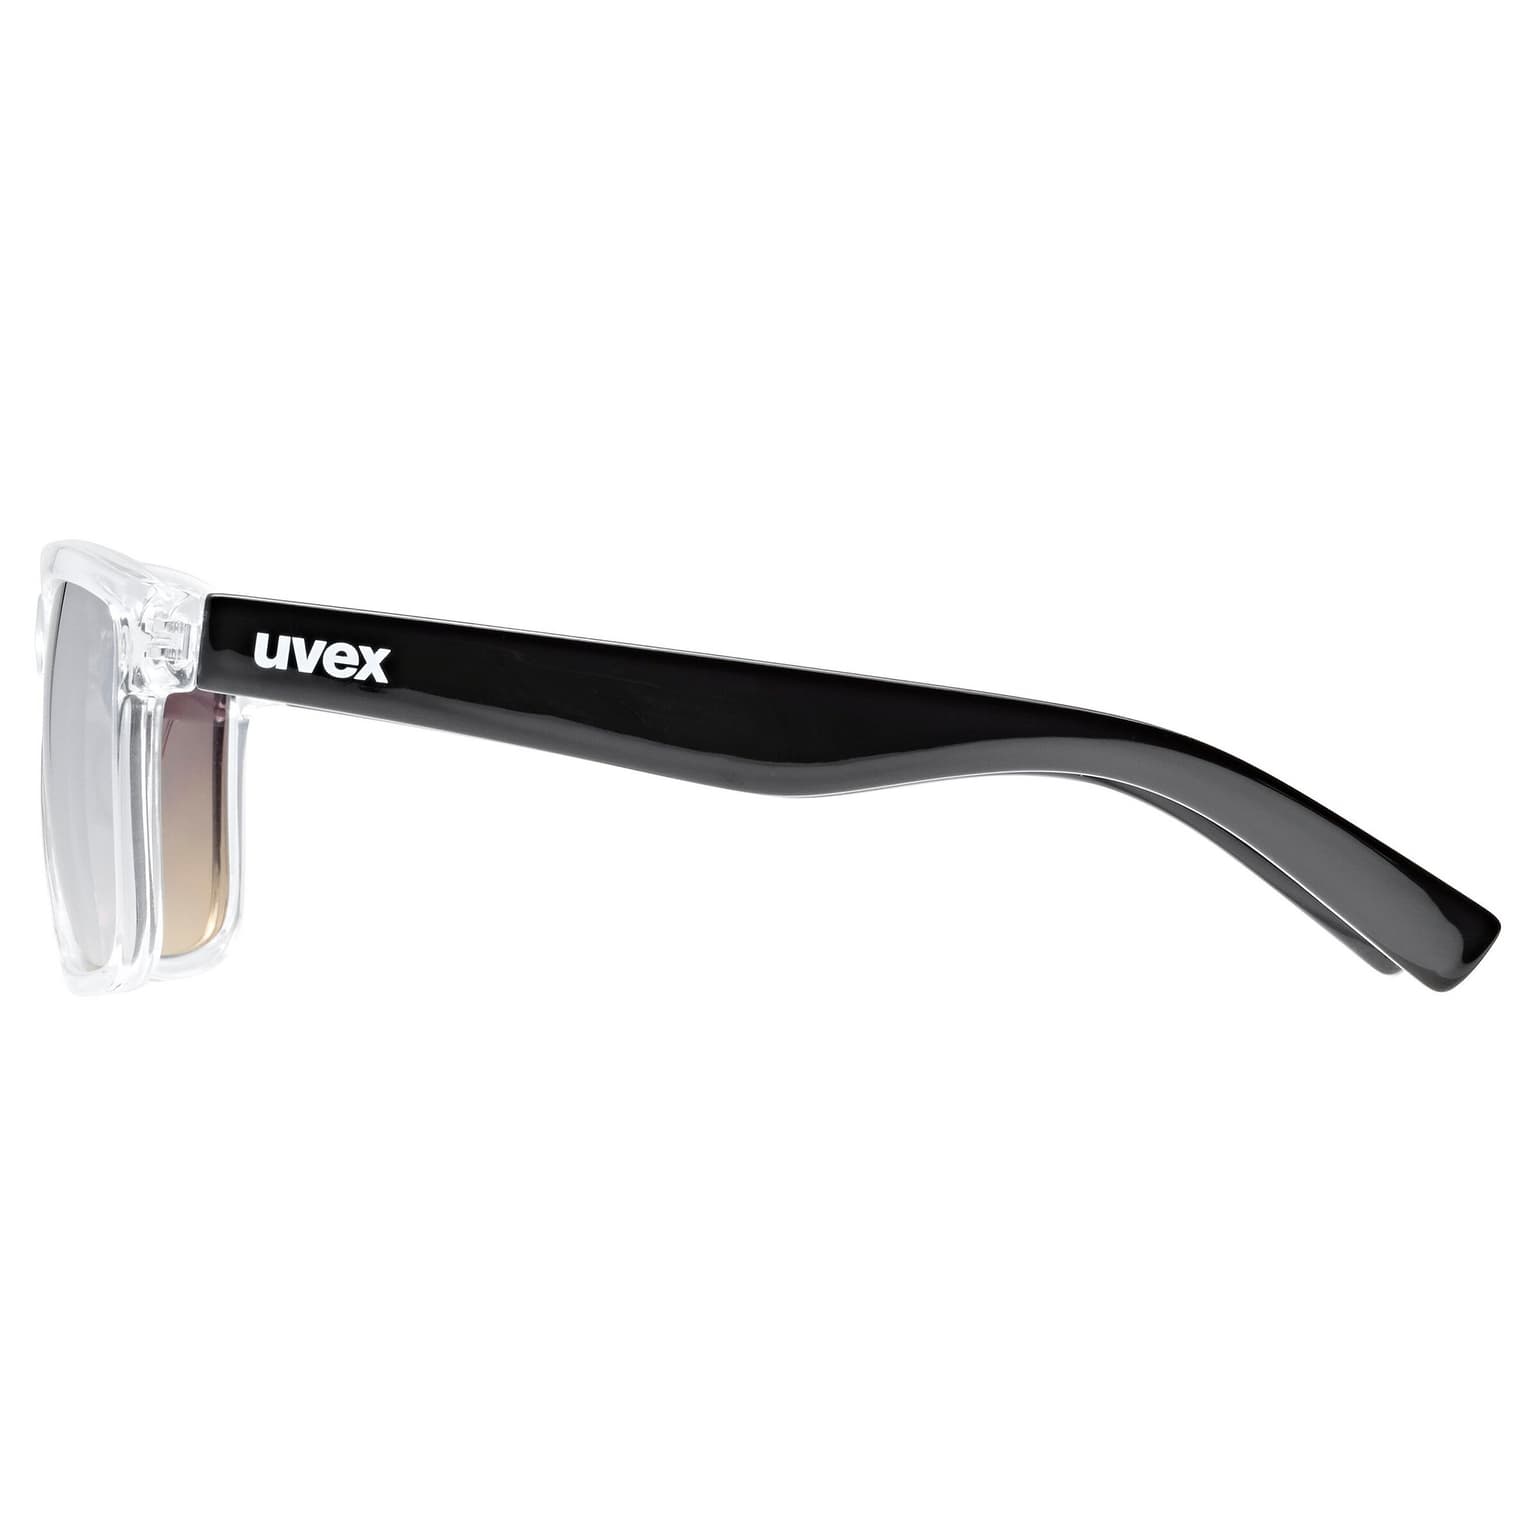 Uvex Uvex Lifestyle lgl 39 Sportbrille kohle 2